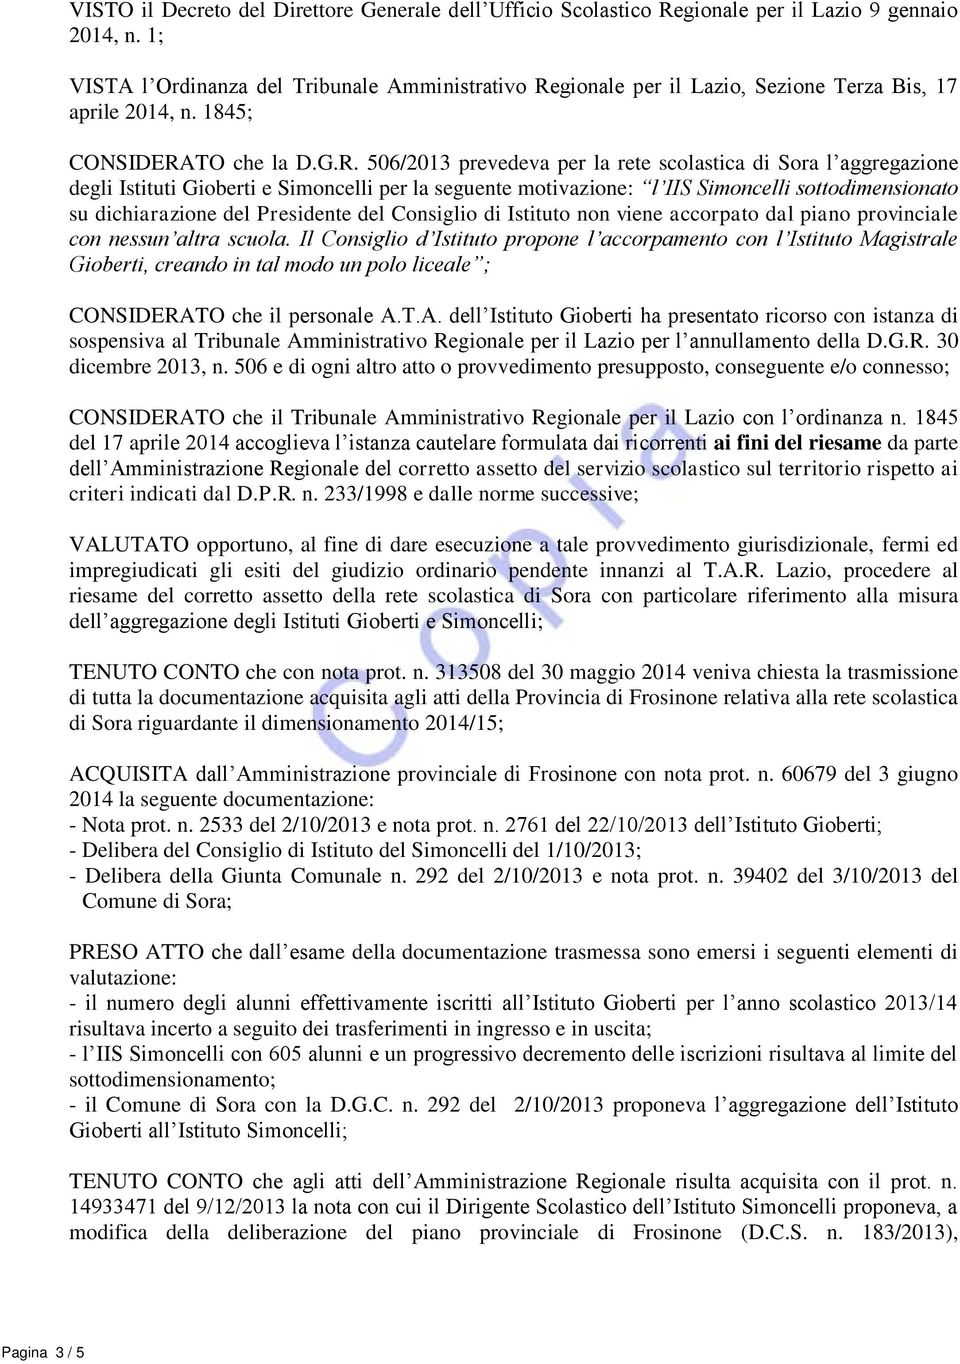 gionale per il Lazio, Sezione Terza Bis, 17 aprile 2014, n. 1845; CONSIDERA